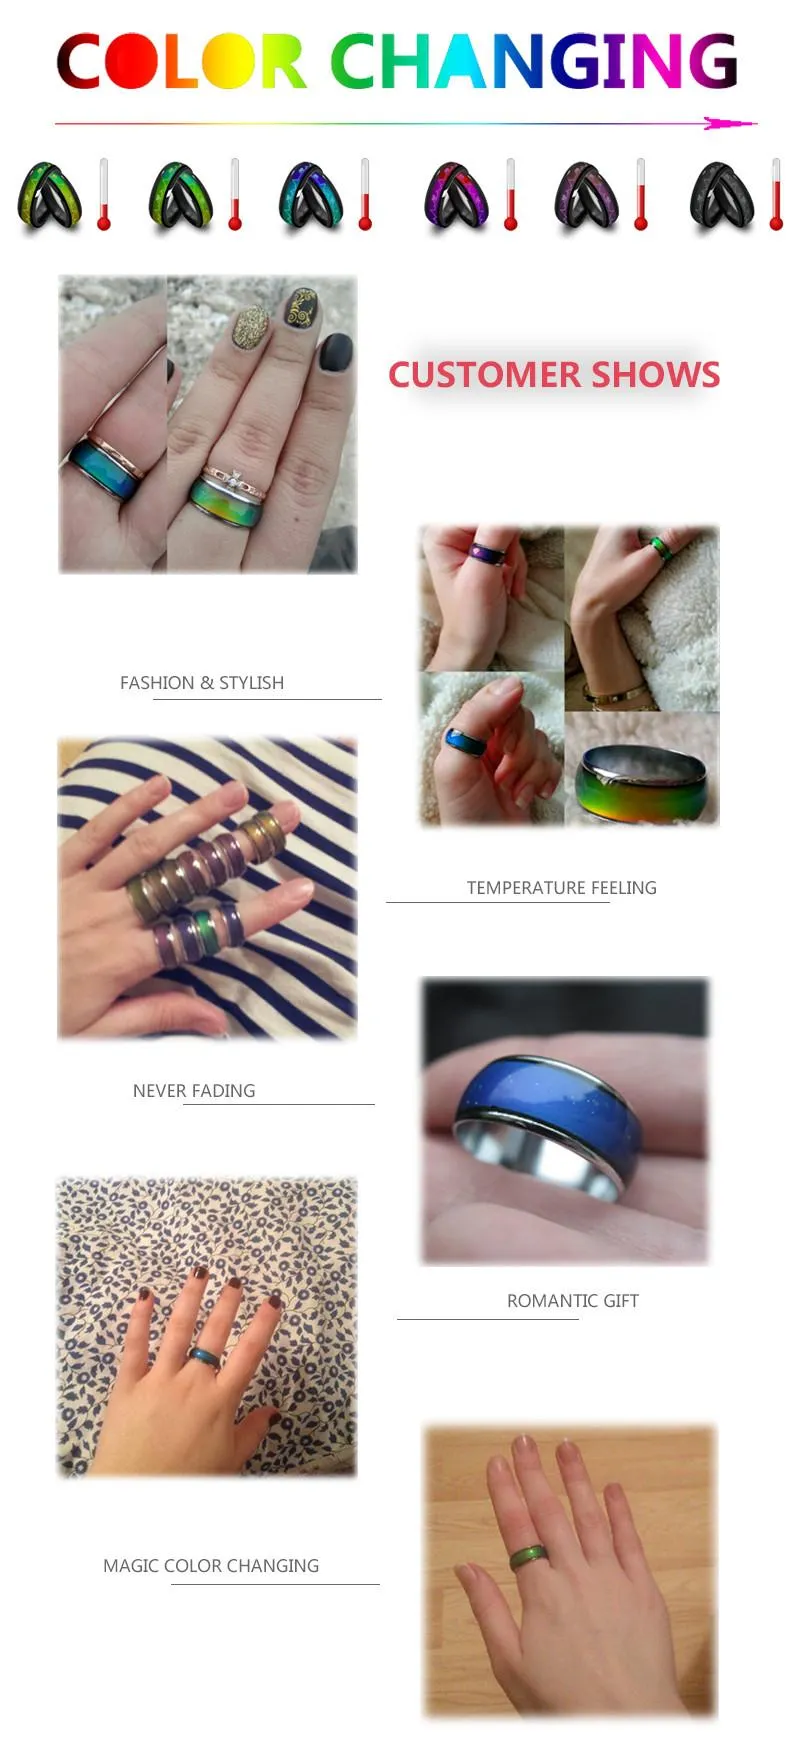 Großhandel Farbe Ring Frauen Verlobungsringe Kupfer Finger Breite 6mm Mix Größe Mode Stimmung Ring Ändern von Farben Legierung Schmuck DHL Frei